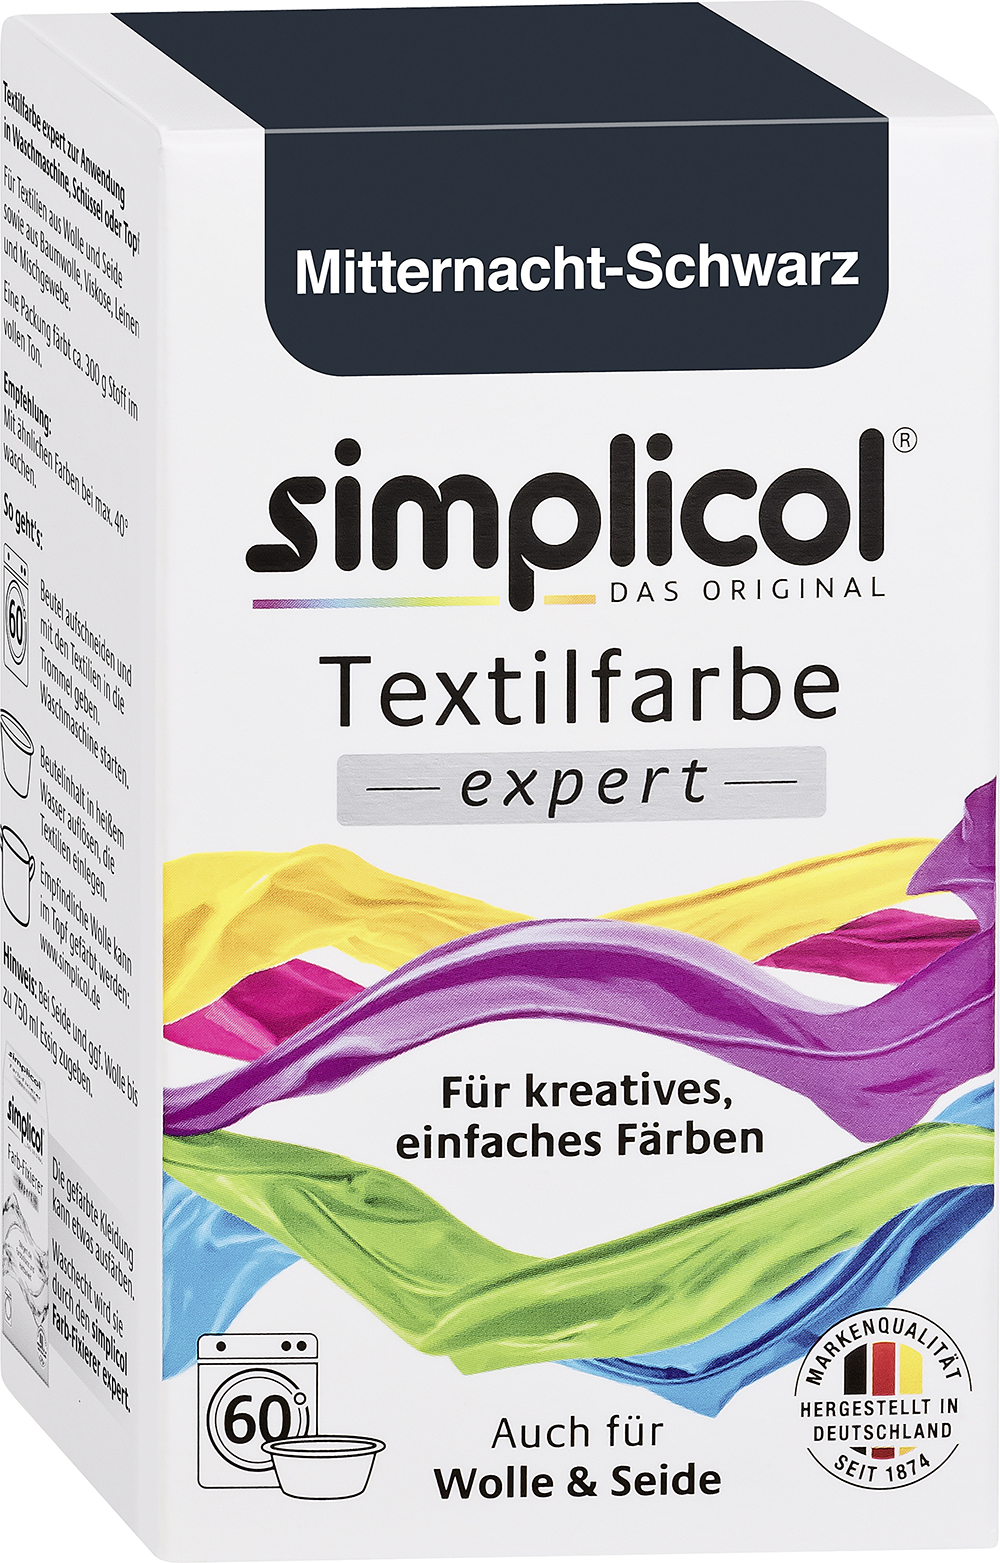 SIMPLICOL Textilfarbe Expert 150g mitternachtschwarz